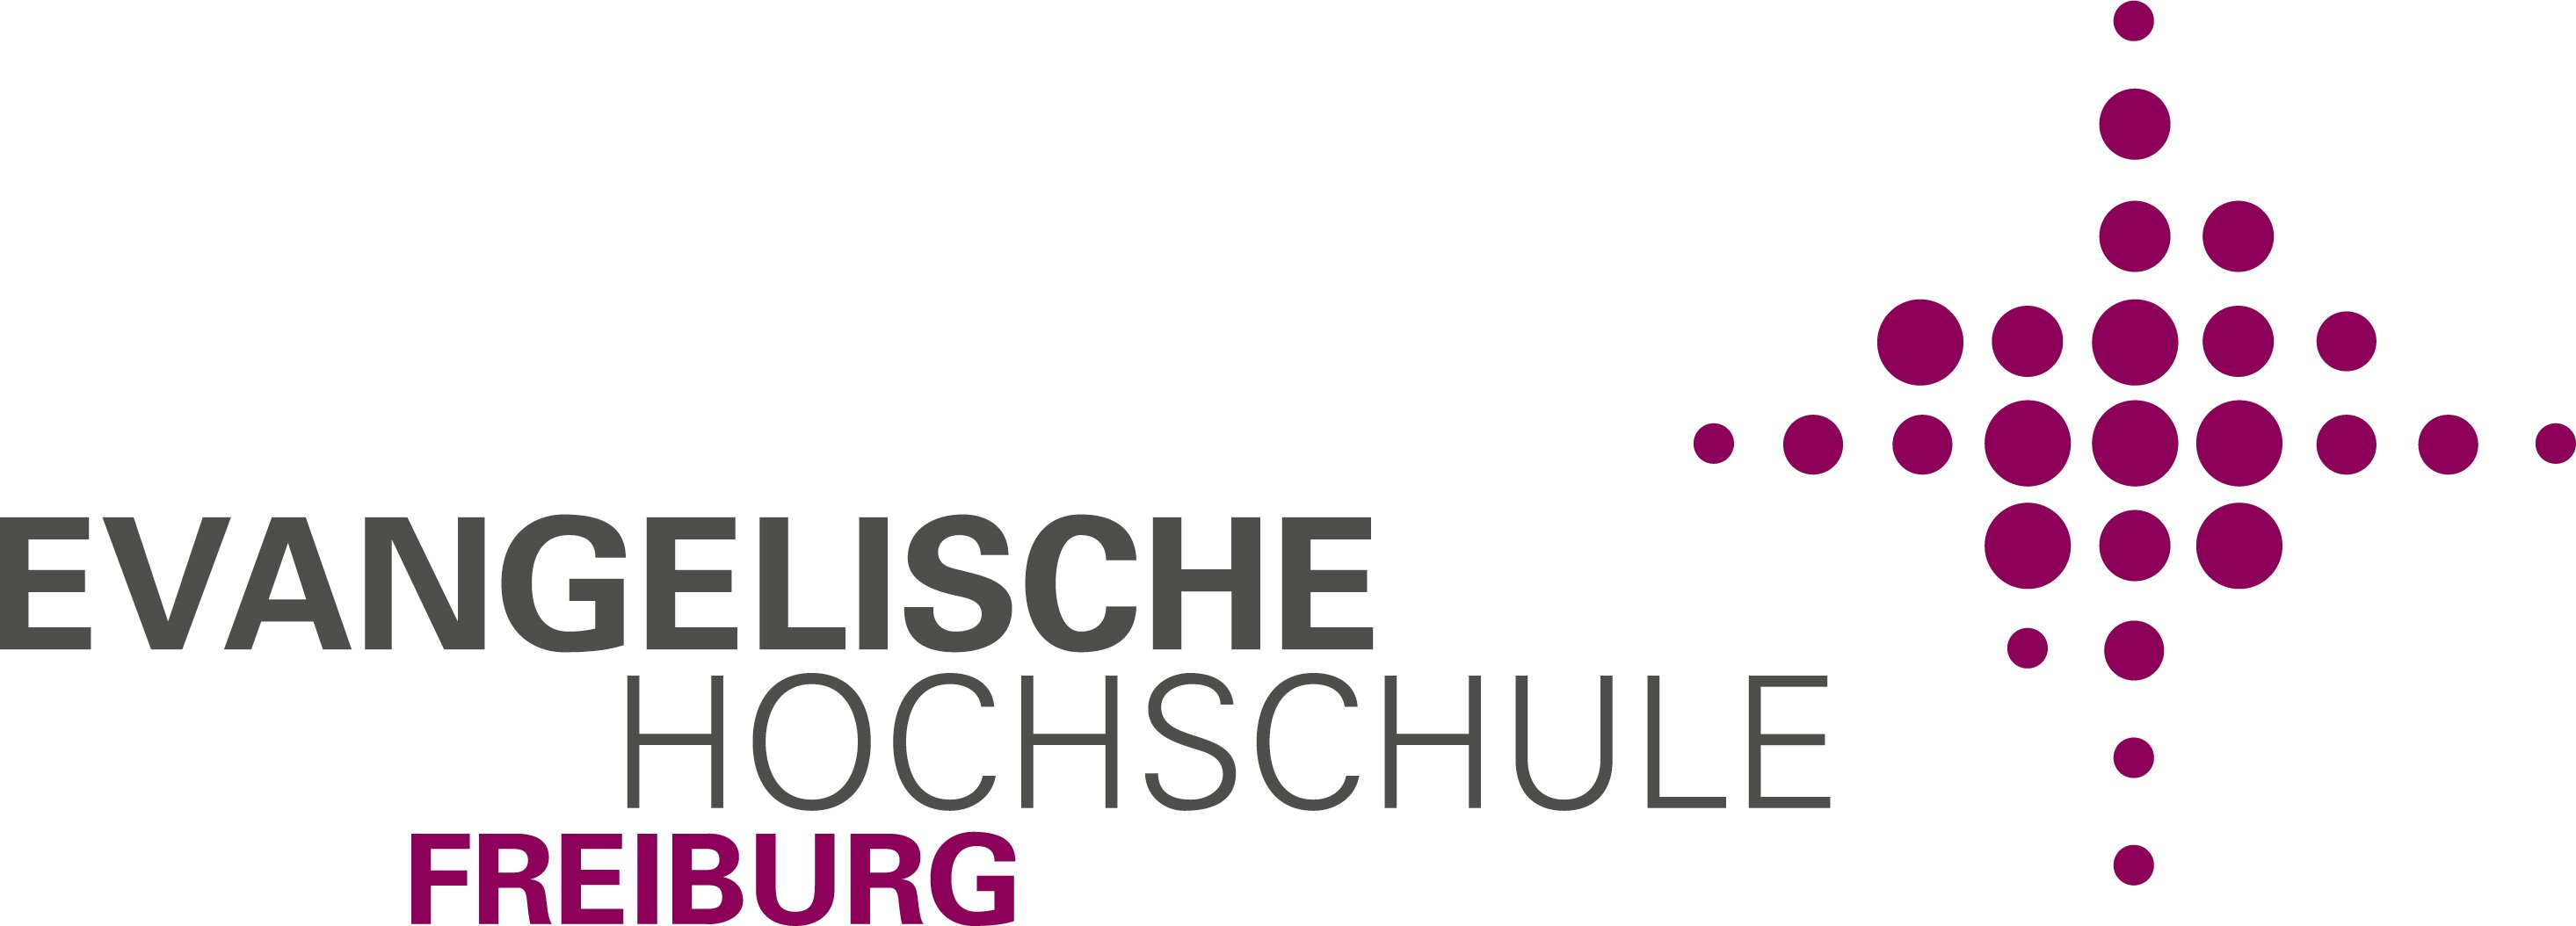 Evangelische Hochschule Freiburg (EH)